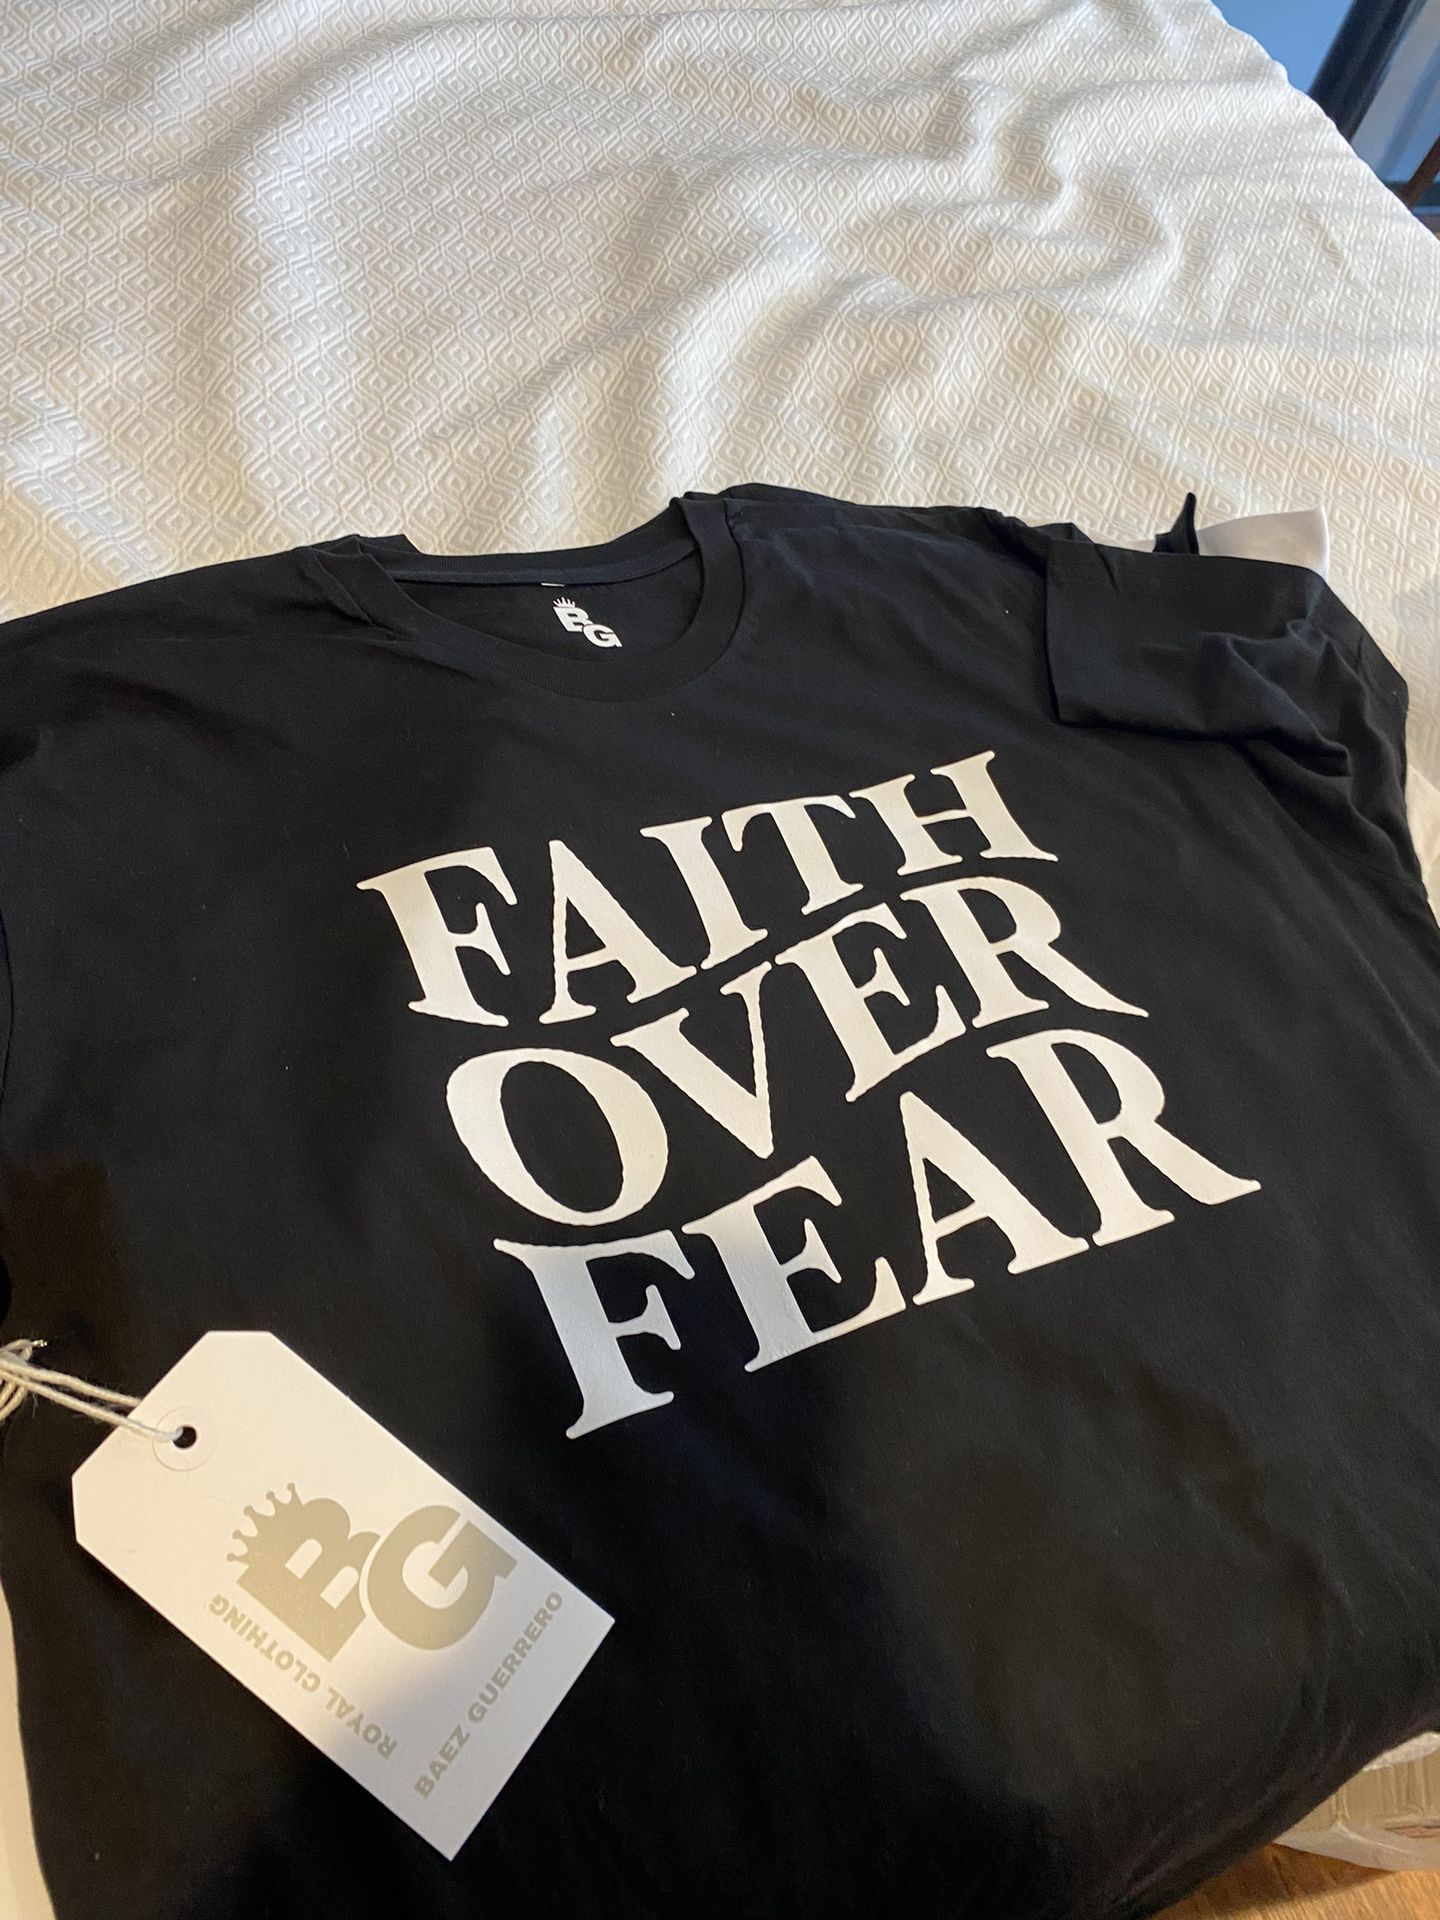 Faith Over Fear From “BG Royal Clothing”